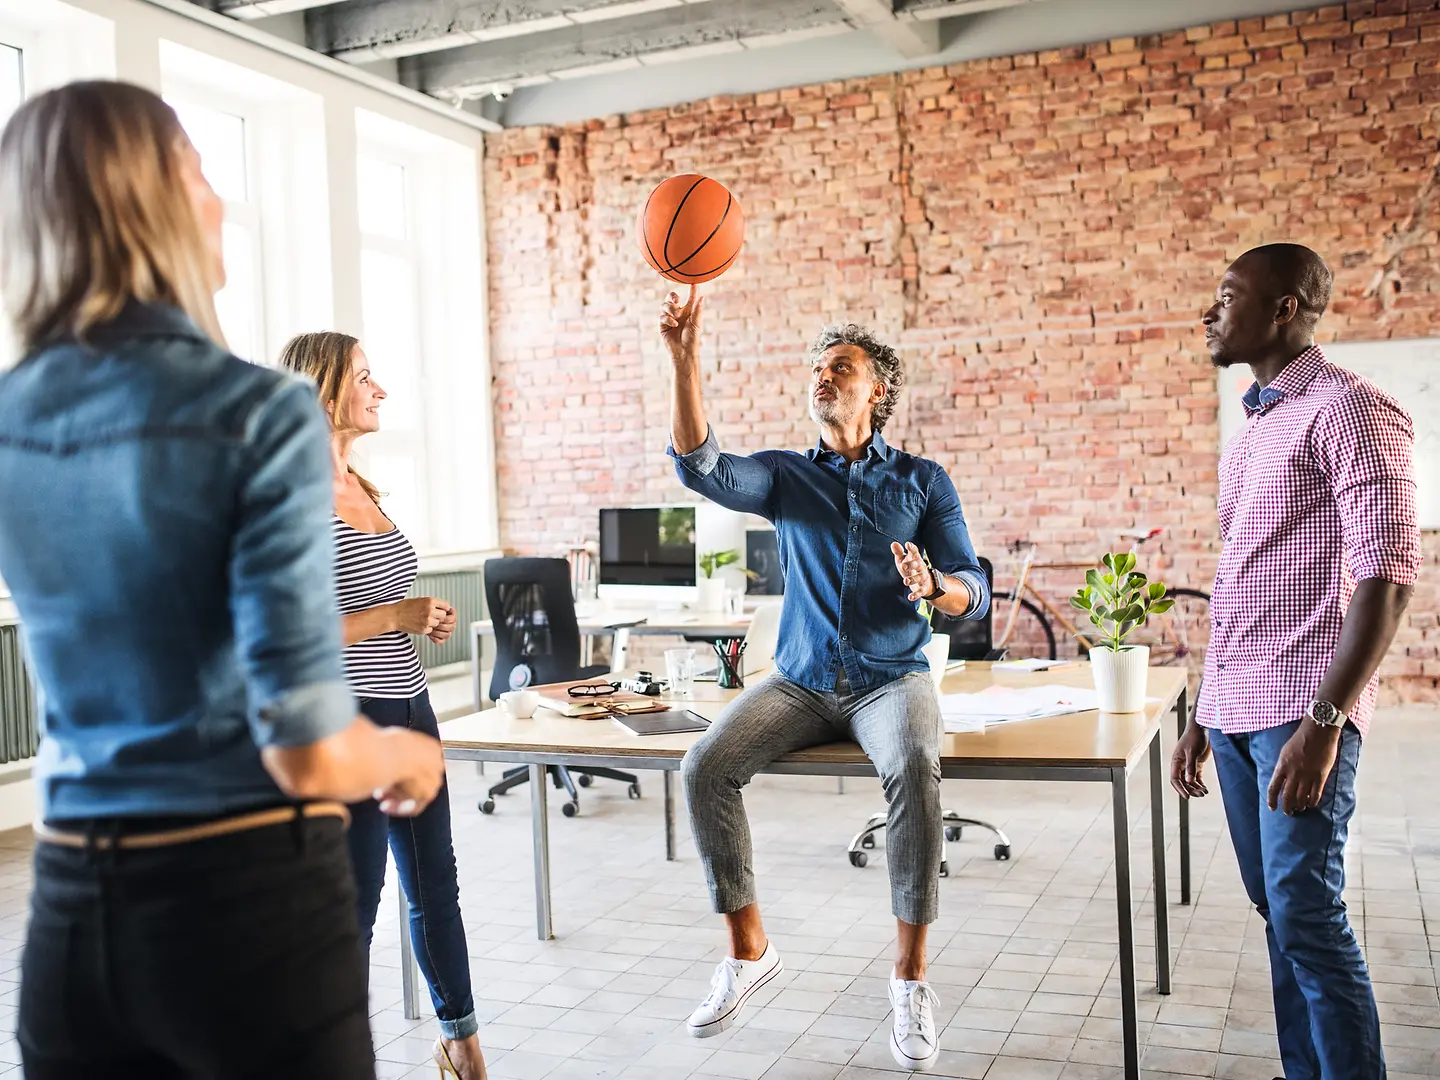 Ein Team steht im Büro. Ein Mitarbeiter sitzt auf dem Tisch und spielt mit einem Basketball.